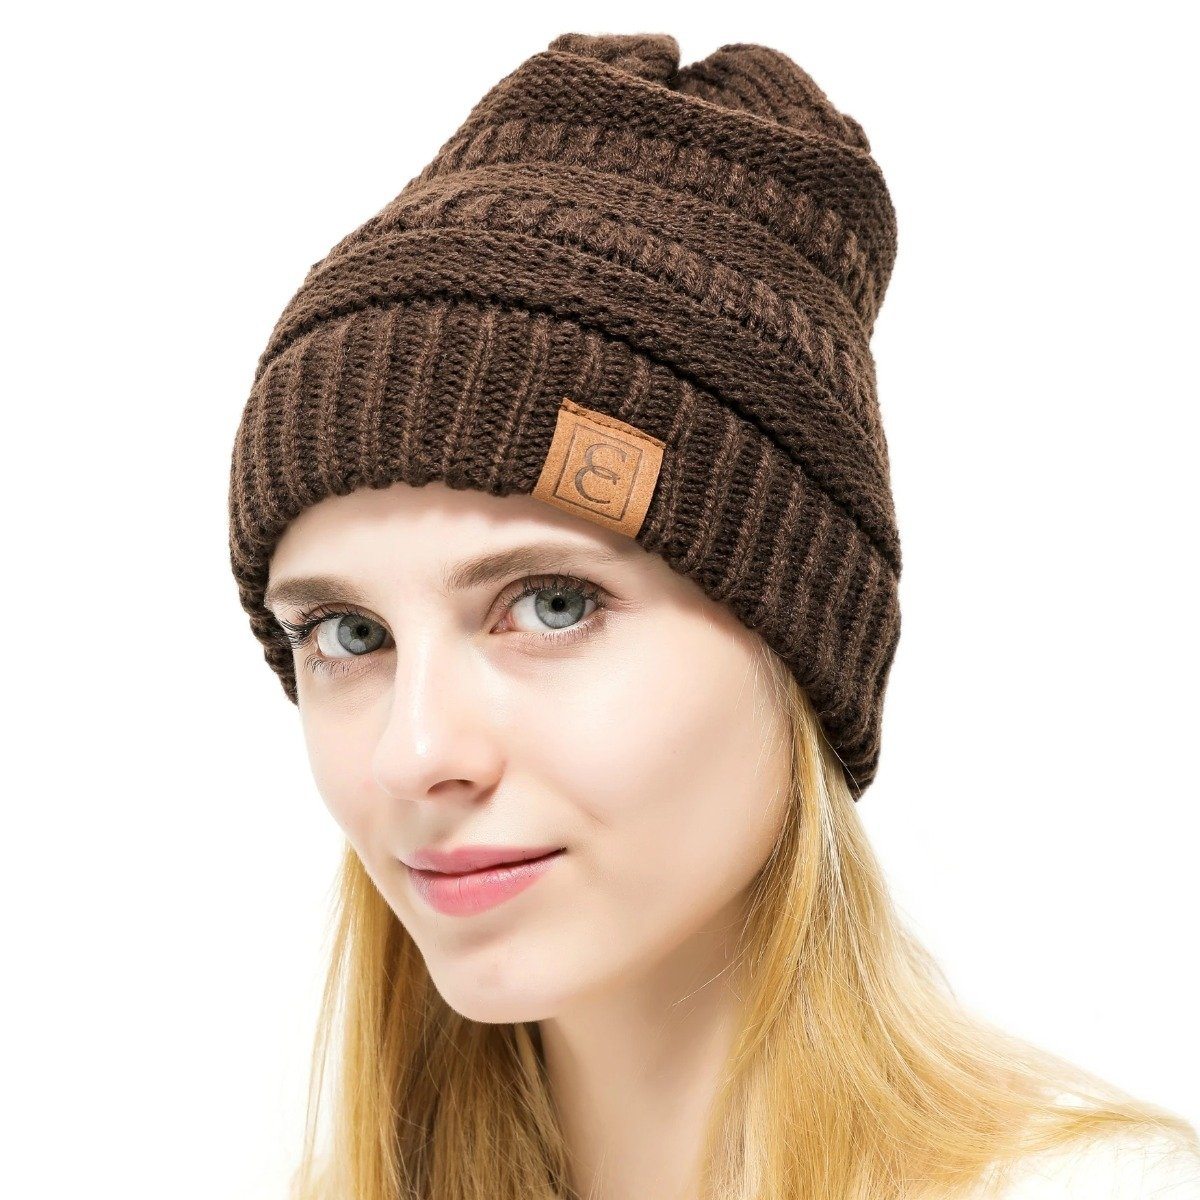 Women's Popular CC Chic Winter Beanie Hat / Brown